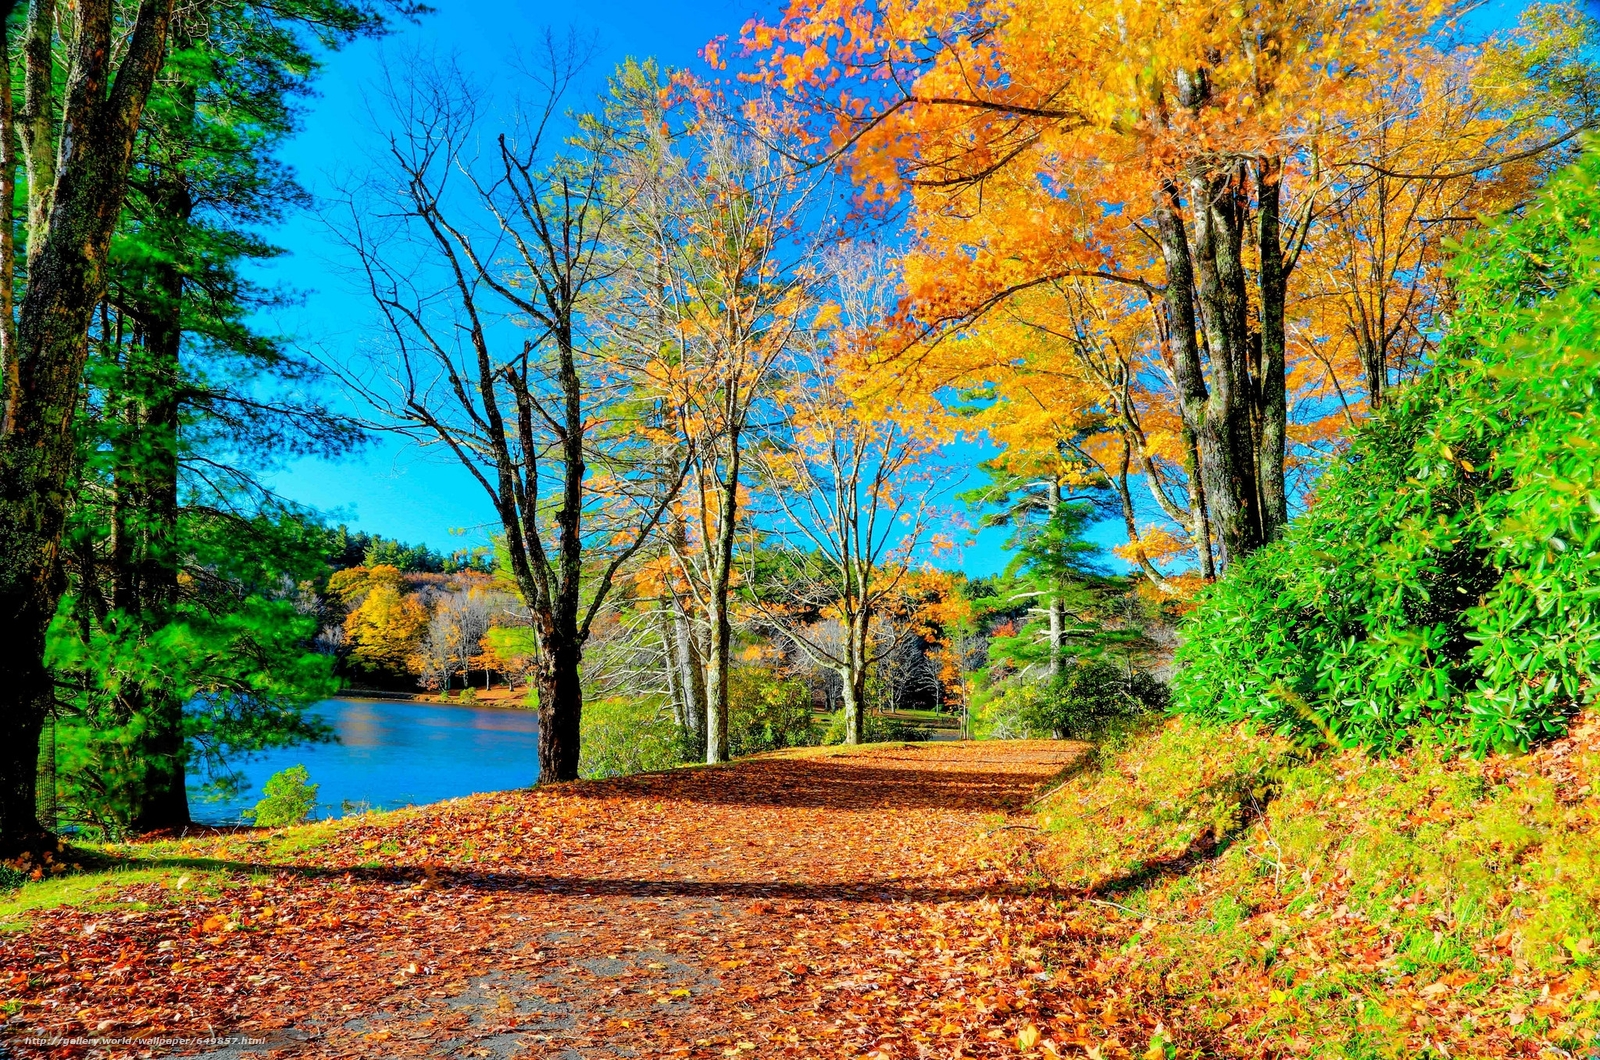 ノースカロライナ州の壁紙,自然の風景,自然,木,葉,秋